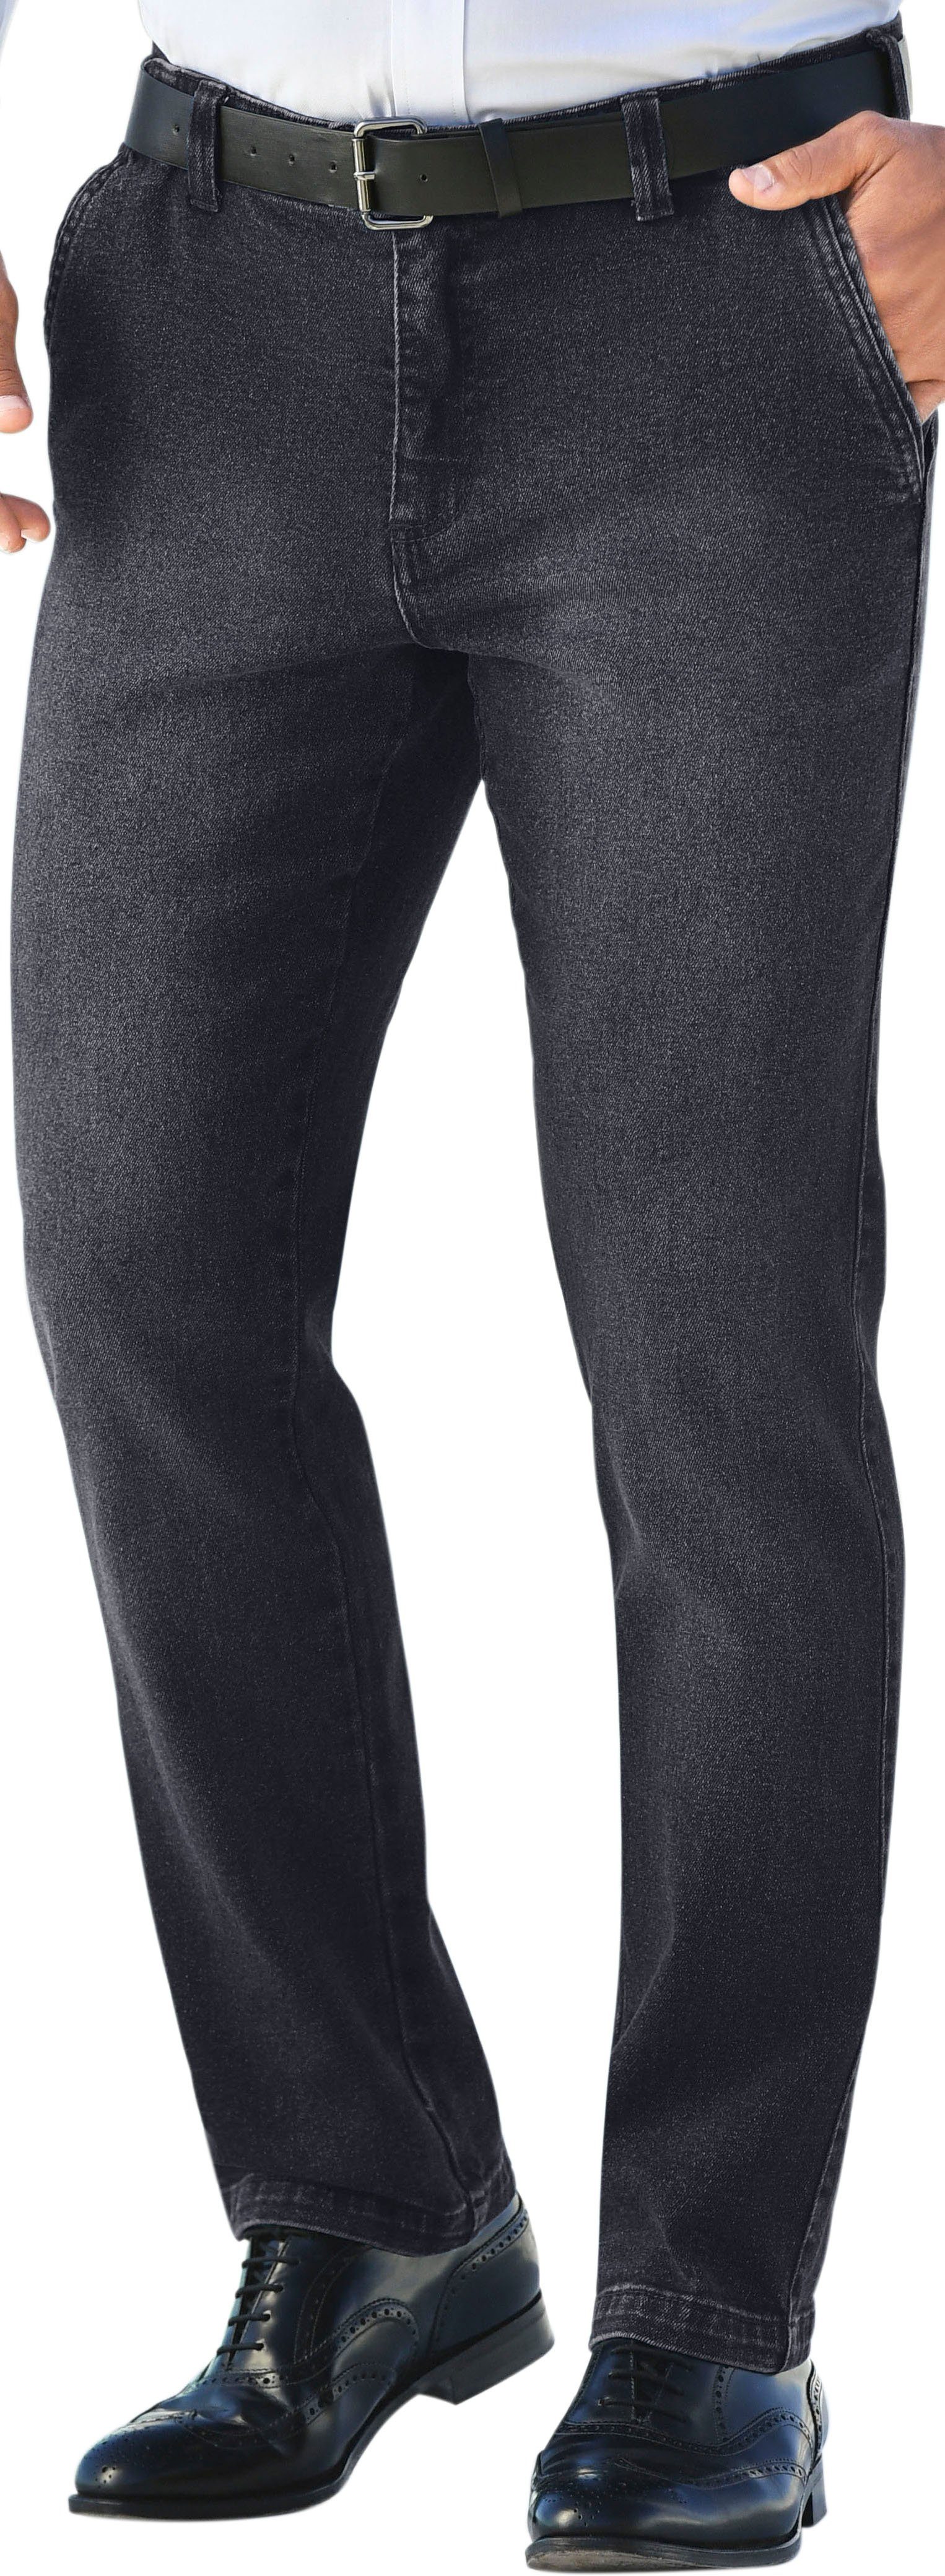 Otto - Marco Donati NU 15% KORTING: MARCO DONATI jeans met stretchaandeel